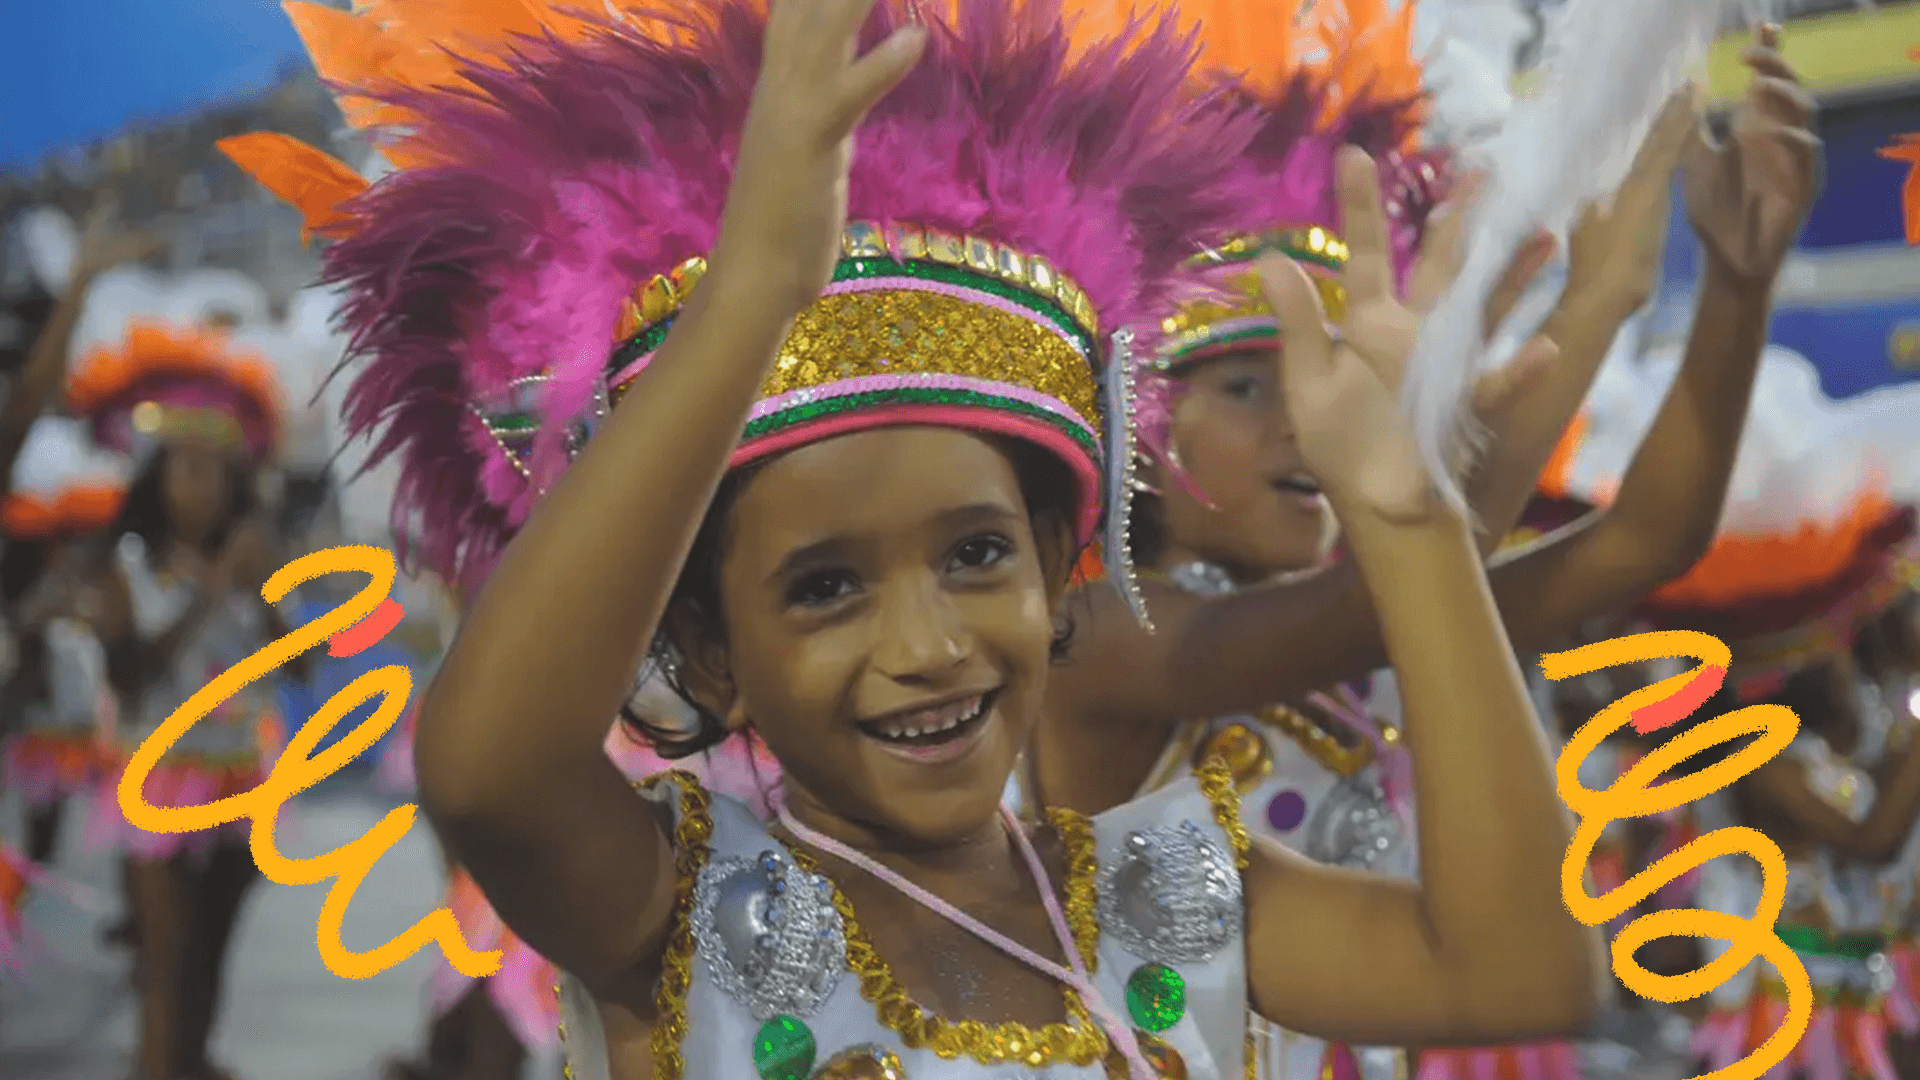 imagem mostra crianças no carnaval e o destaque de um menino negro com fantasia e adereço na cabeça.